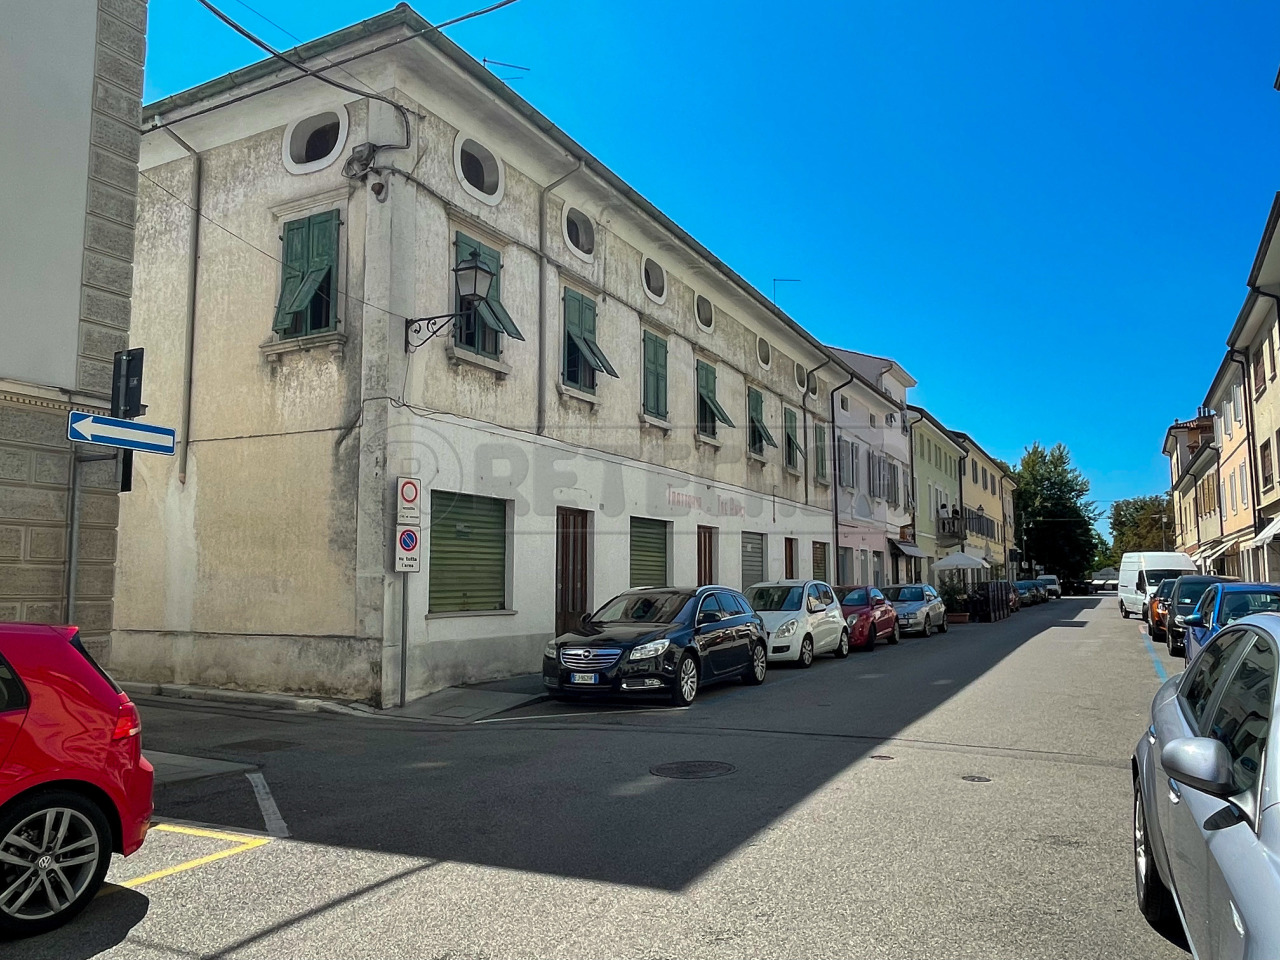 Ristorante / Pizzeria / Trattoria in vendita a Gradisca d'Isonzo, 1 locali, prezzo € 398.000 | CambioCasa.it